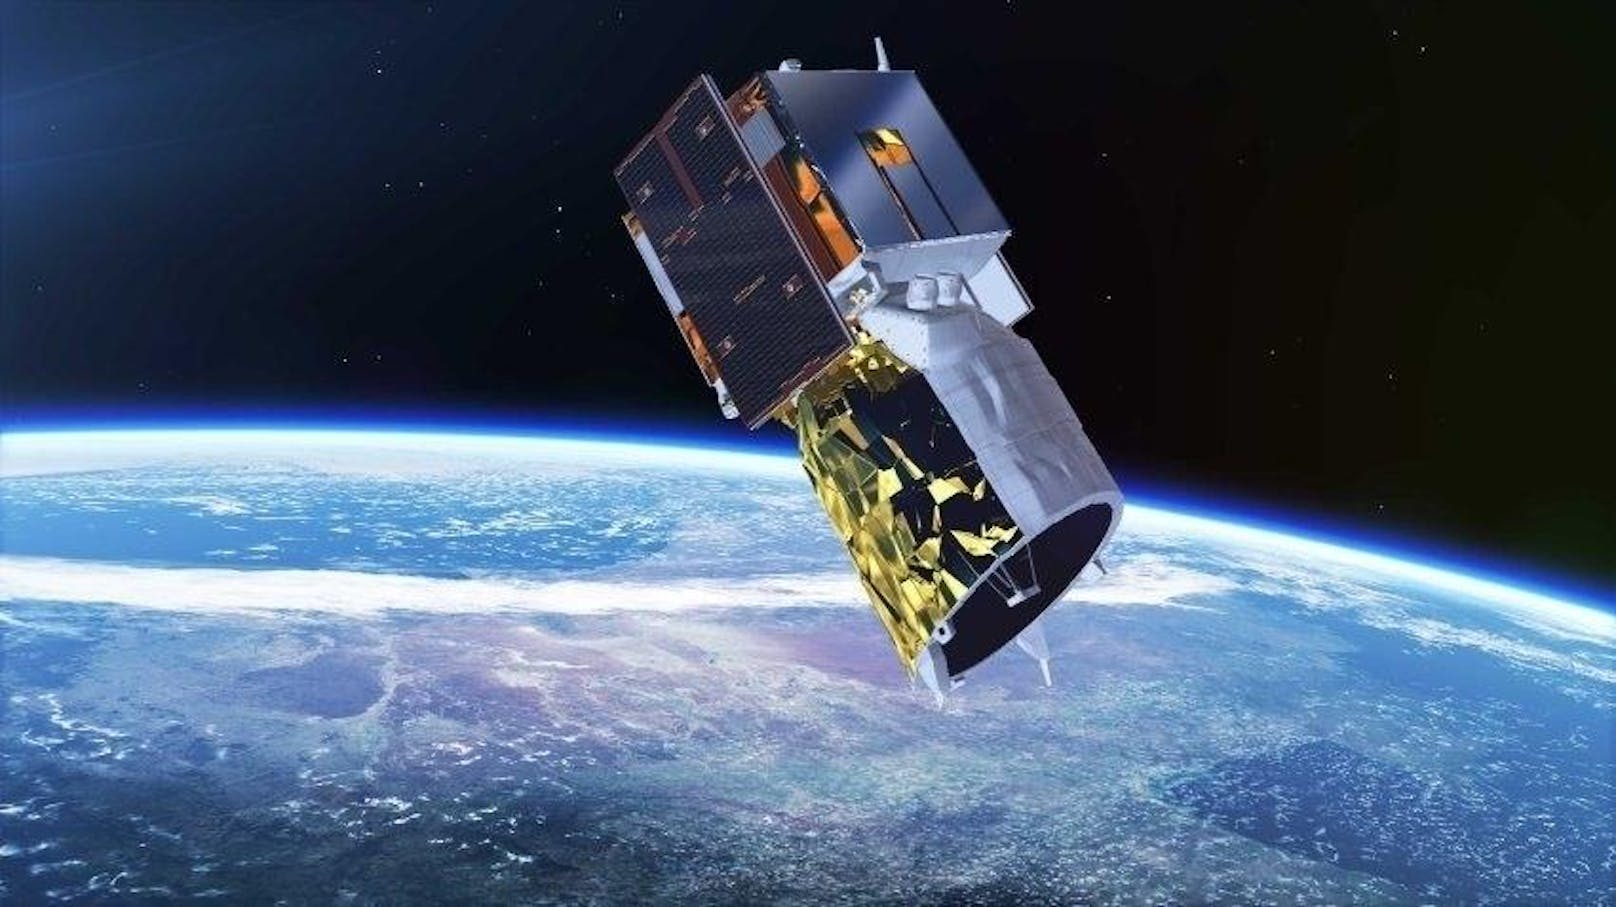 Der Arbeitsplatz des 1,4 Tonnen schweren Satelliten ist die Erdumlaufbahn. Hier auf einer Zeichnung zu sehen. "Aeolus" soll erstmals Windprofile von der ganzen Erde erstellen und so die Wettervorhersage revolutionieren.